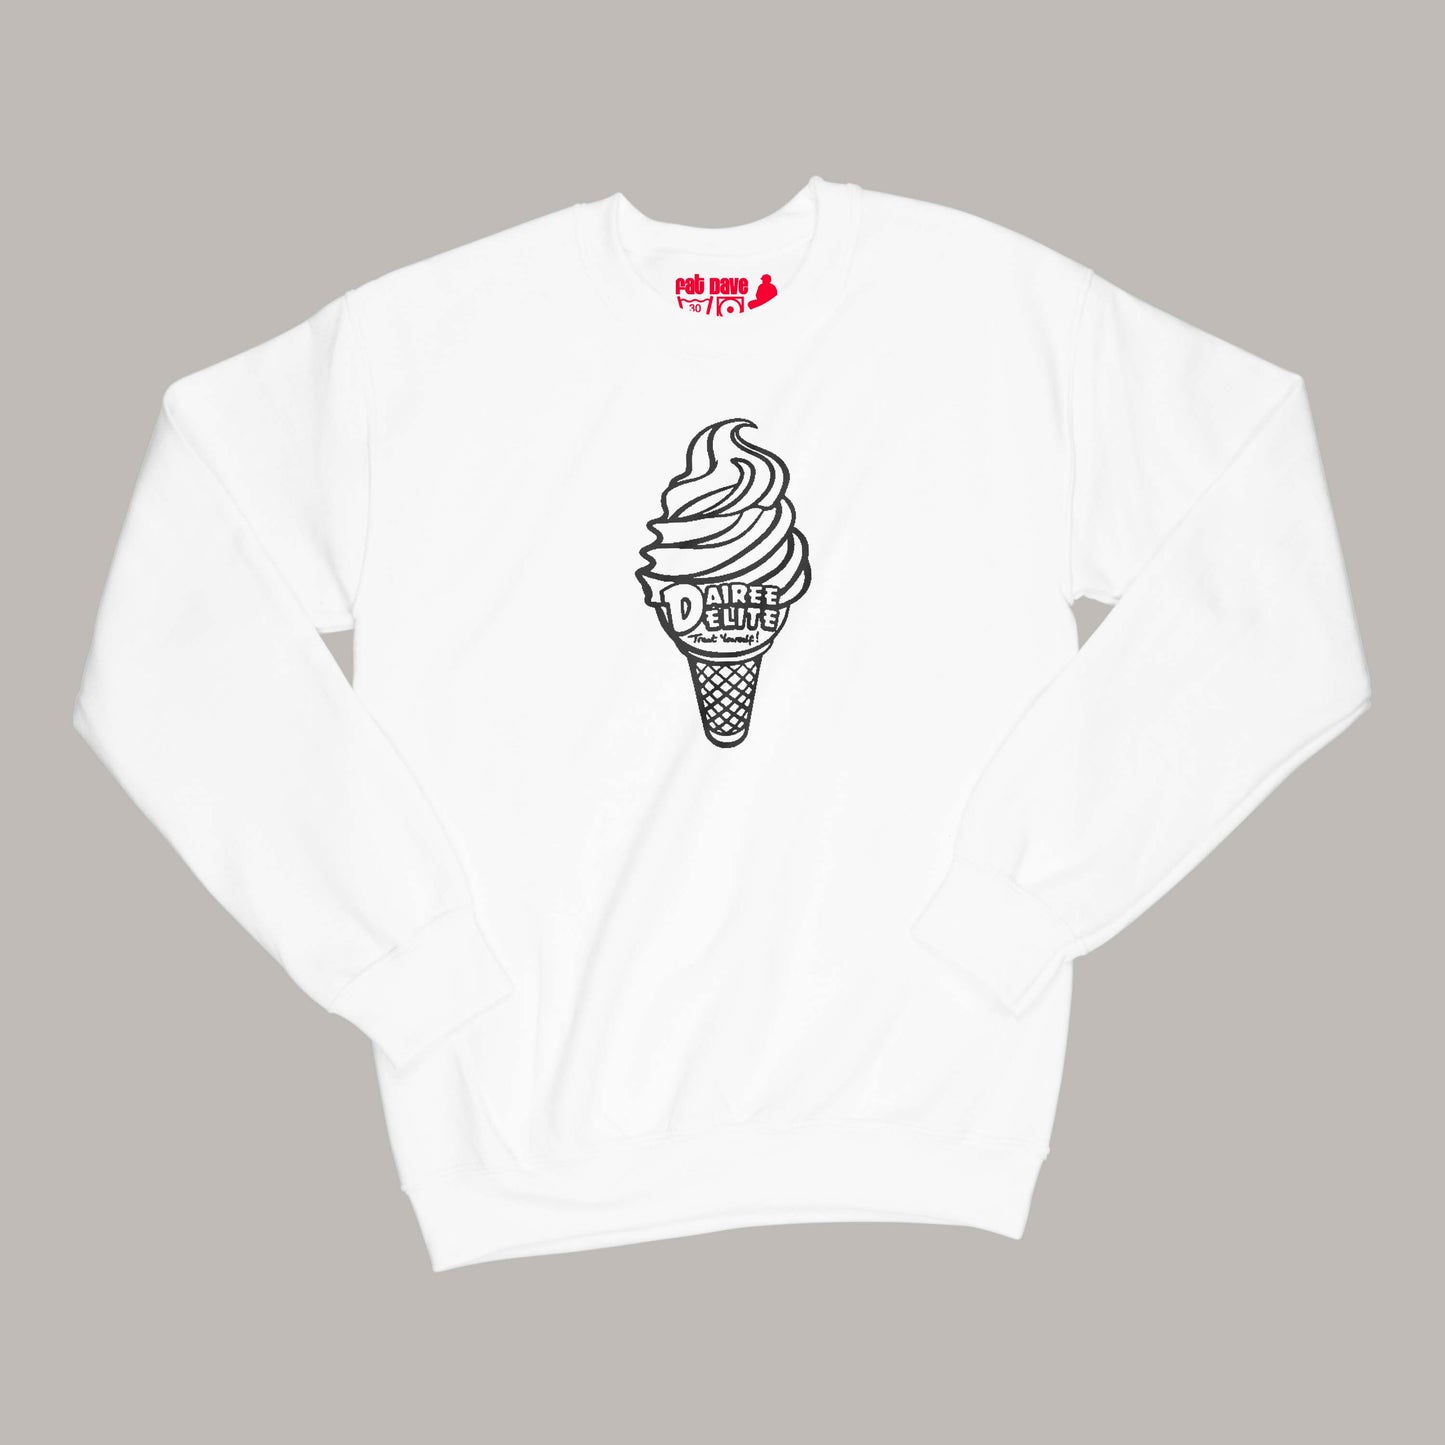 Dairee Delite 70th Anniversary Treat Yourself Cone Sweatshirt Small White